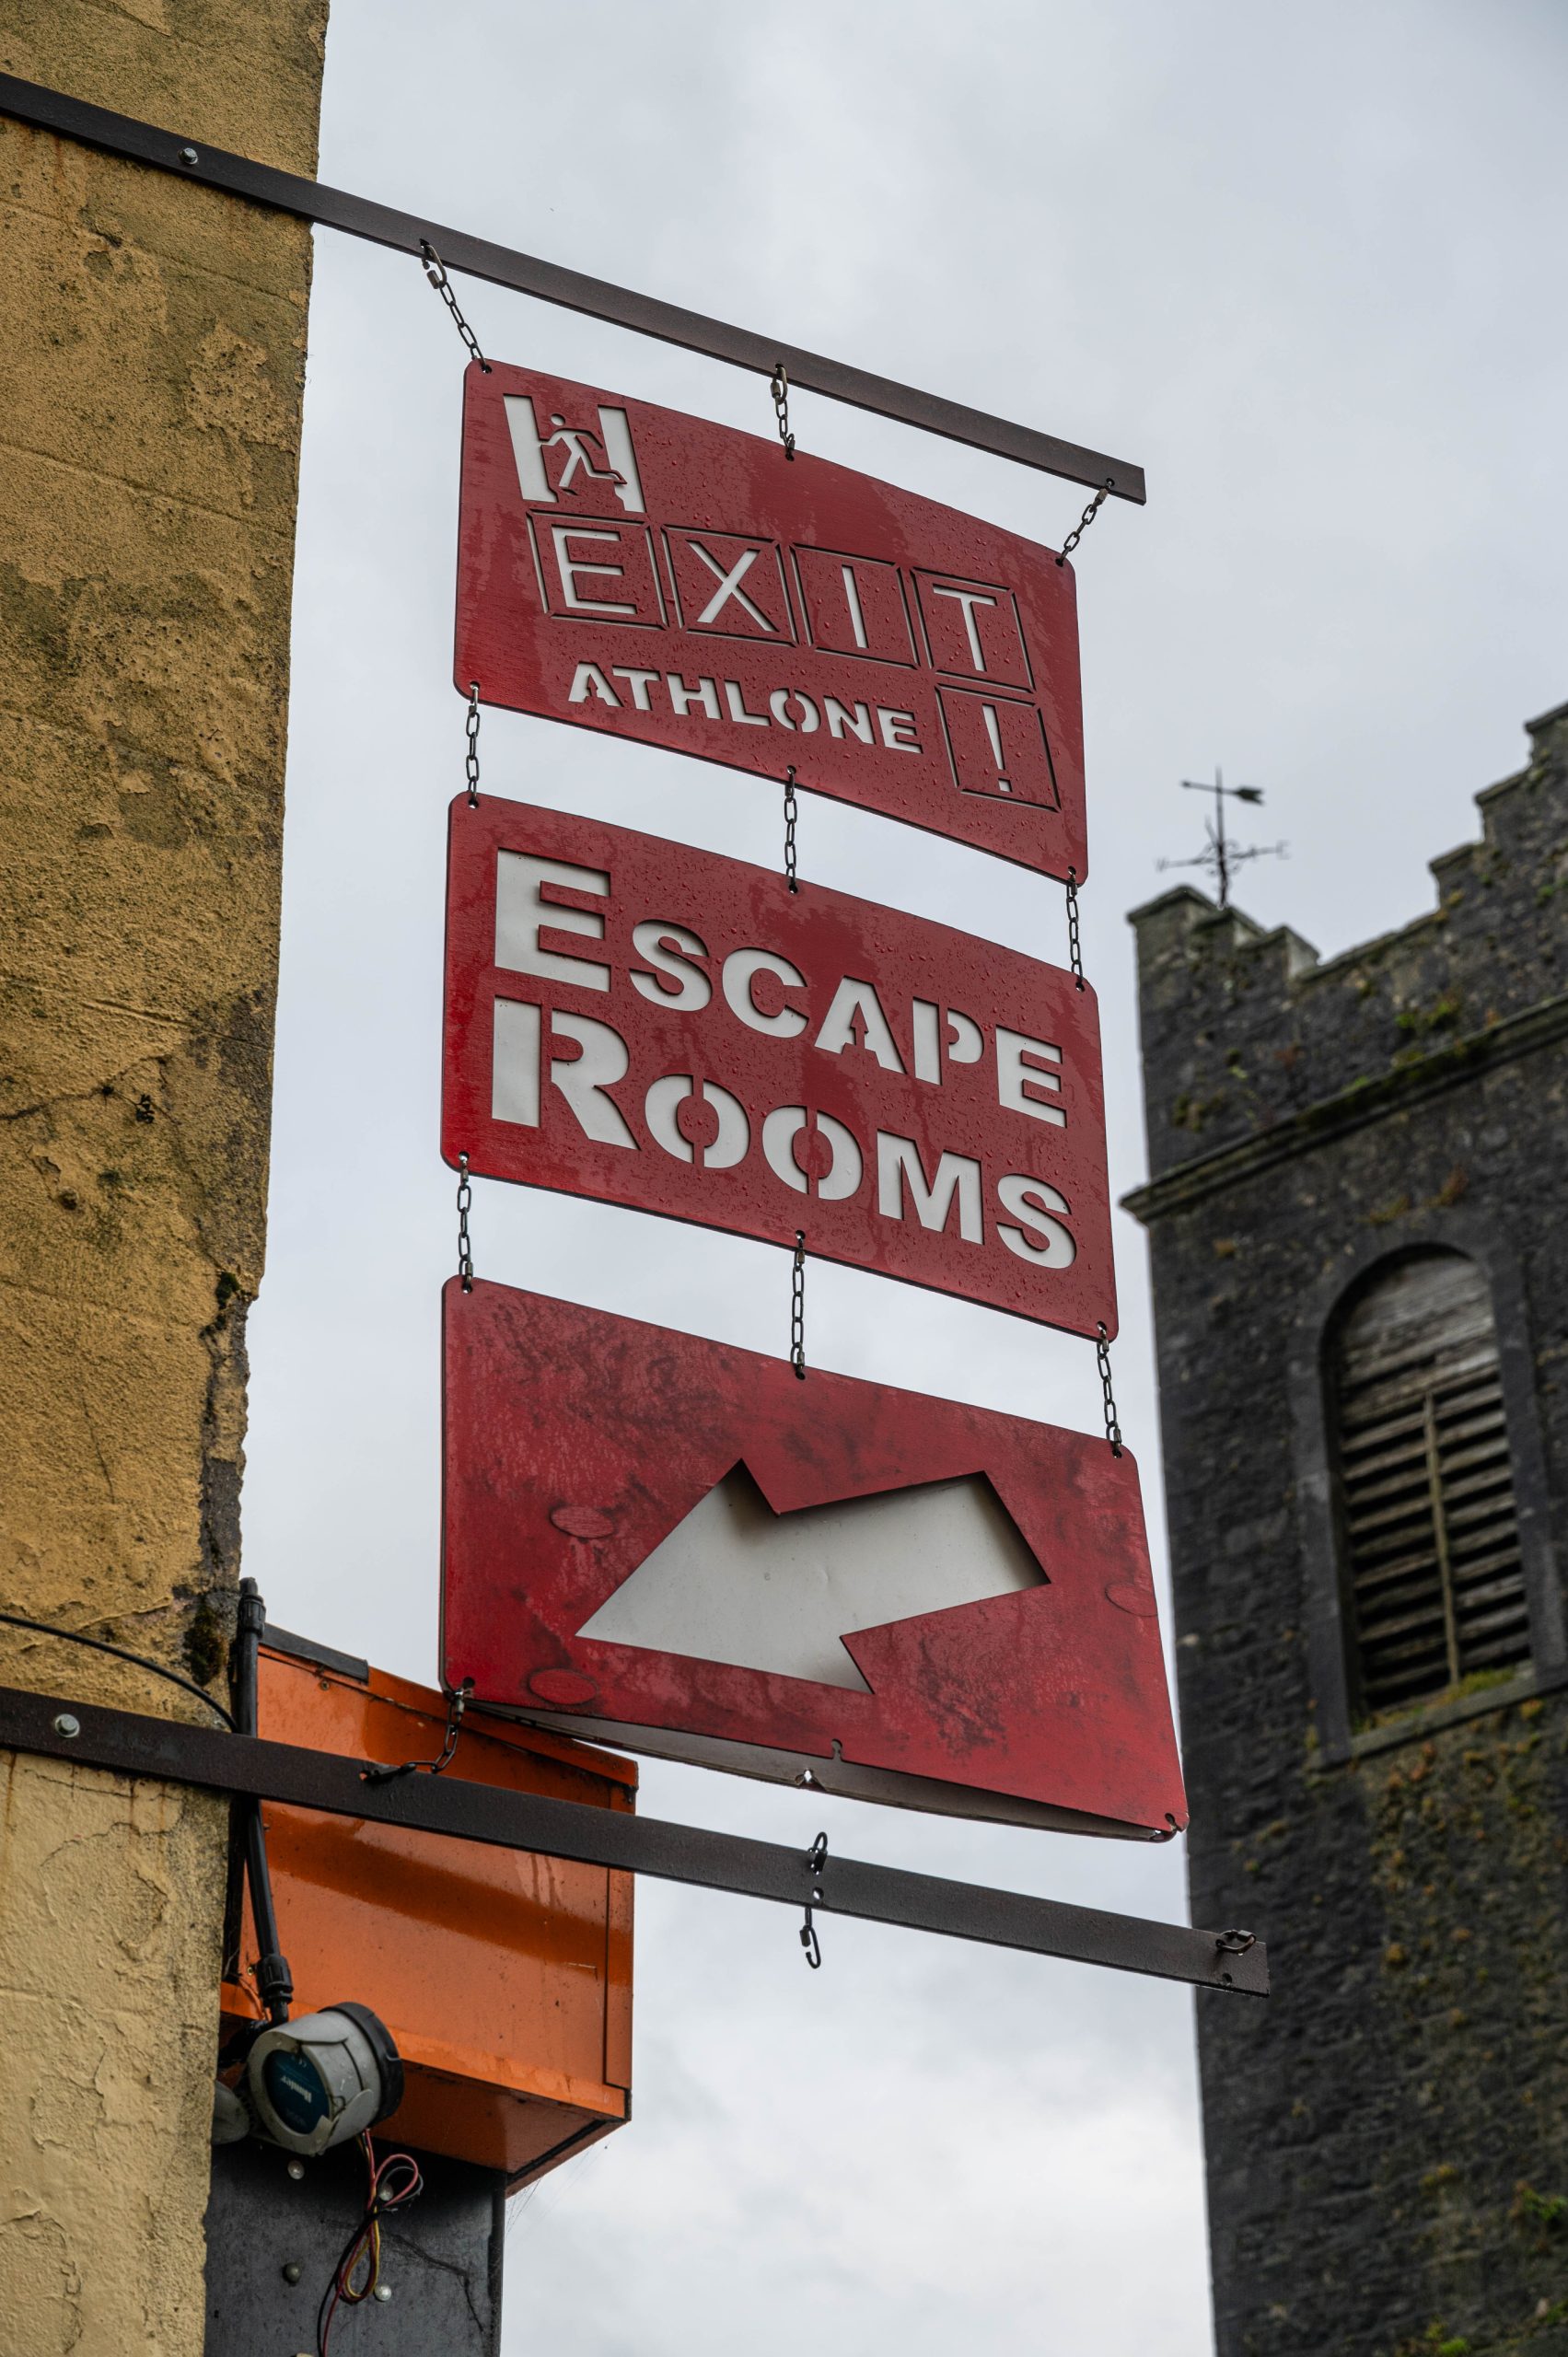 Exit Athlone Escape Rooms